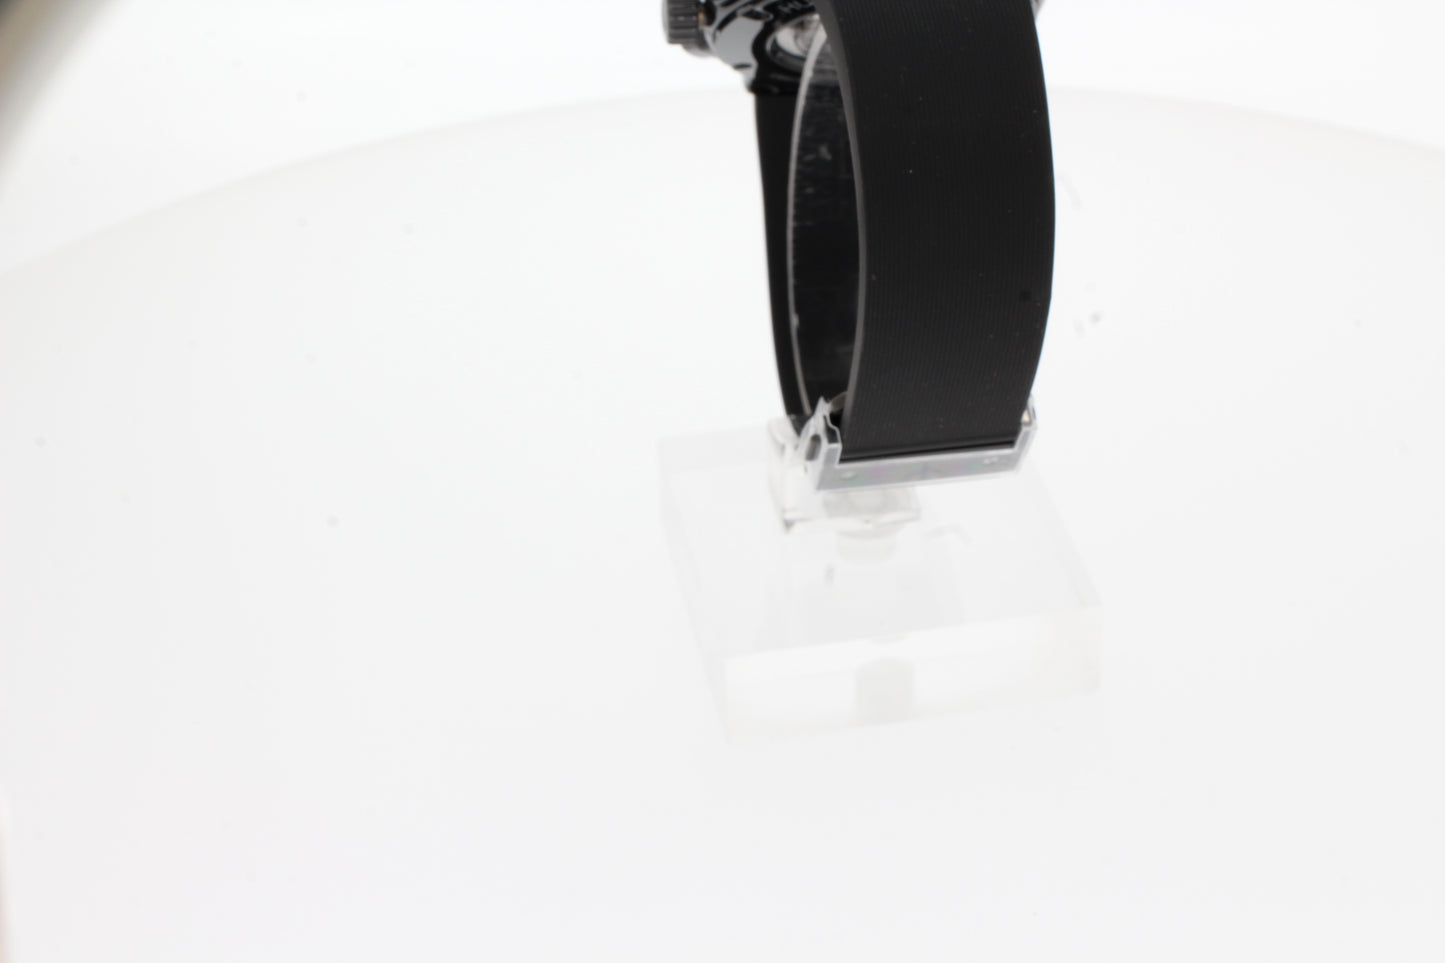 Hublot CLASSIC FUSION CHRONOGRAPH BLACK MAGIC 45mm 521.CM.1171.RX schwarze Keramik Herren Uhr Kautschuk